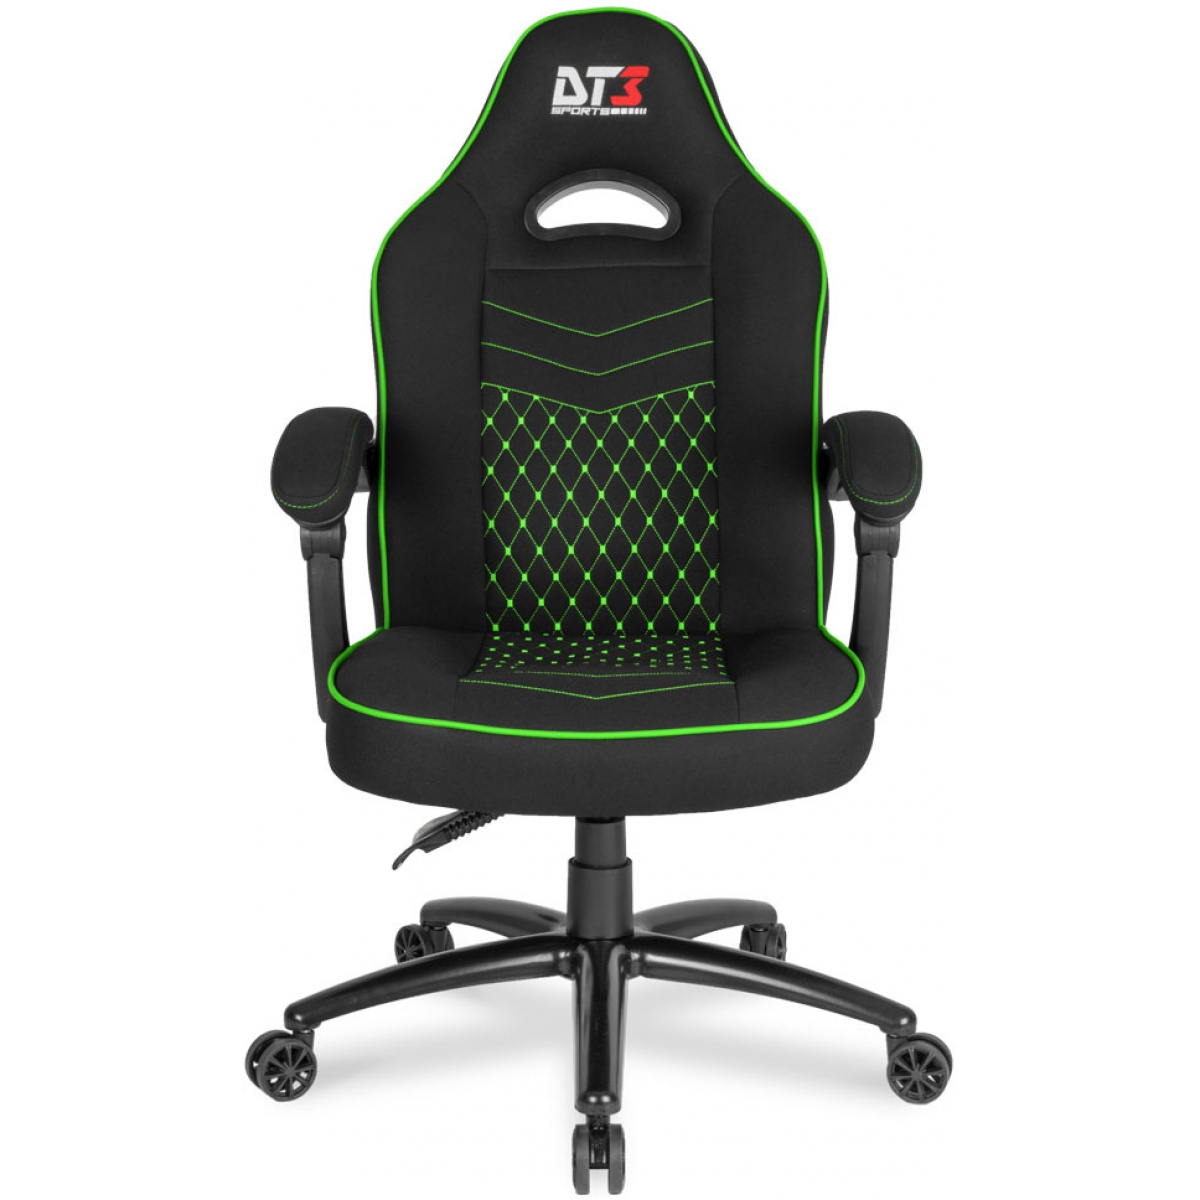 Cadeira Gamer DT3sports GTZ, Green